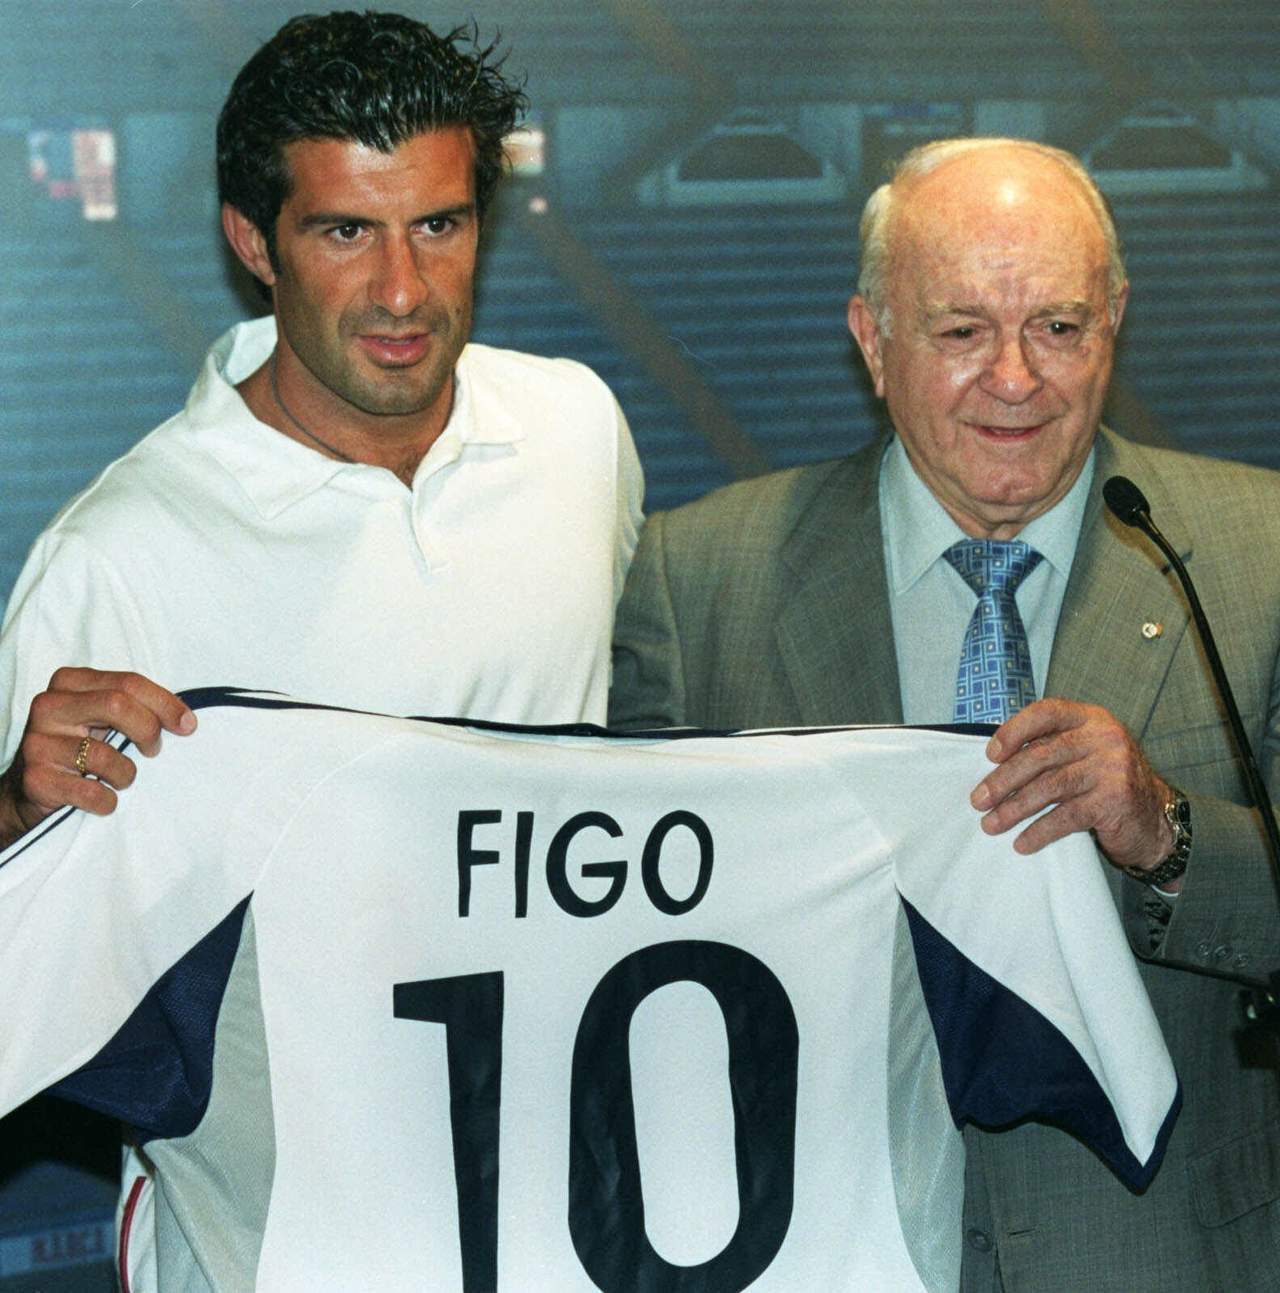 El cometido de Figo en la UEFA será trabajar junto a su presidente y la División de Futbol para tratar temas como aspectos técnicos del juego y sus normas, además de ser parte del programa de embajadores de ésta.
